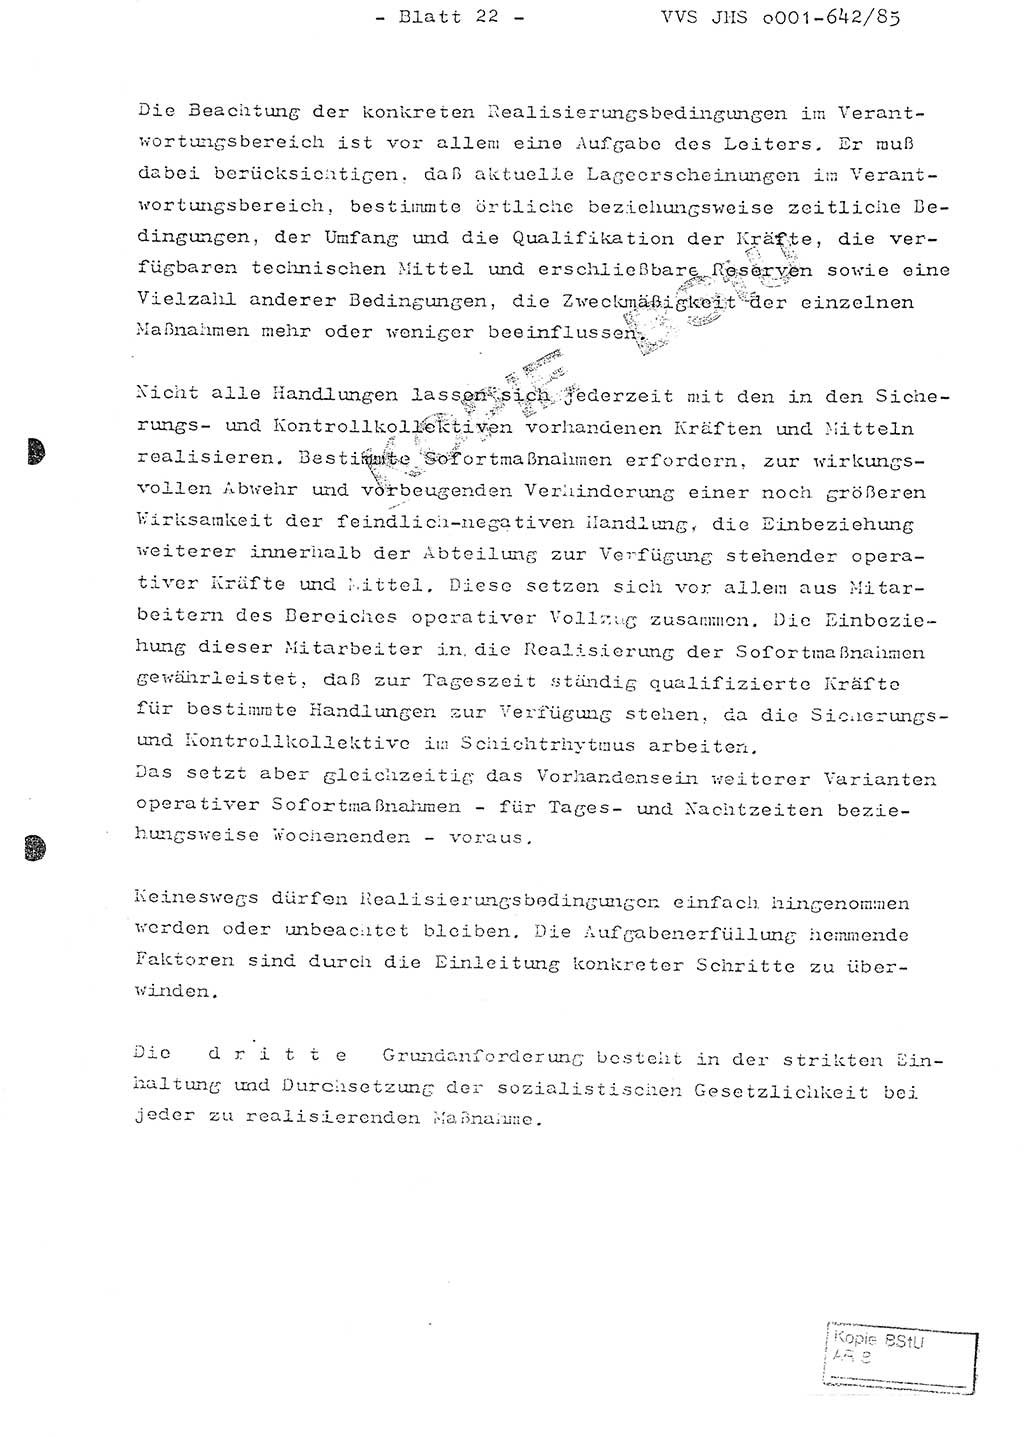 Fachschulabschlußarbeit Oberleutnant Lothar Fahland (Abt. ⅩⅣ), Ministerium für Staatssicherheit (MfS) [Deutsche Demokratische Republik (DDR)], Juristische Hochschule (JHS), Vertrauliche Verschlußsache (VVS) o001-642/85, Potsdam 1985, Blatt 22 (FS-Abschl.-Arb. MfS DDR JHS VVS o001-642/85 1985, Bl. 22)